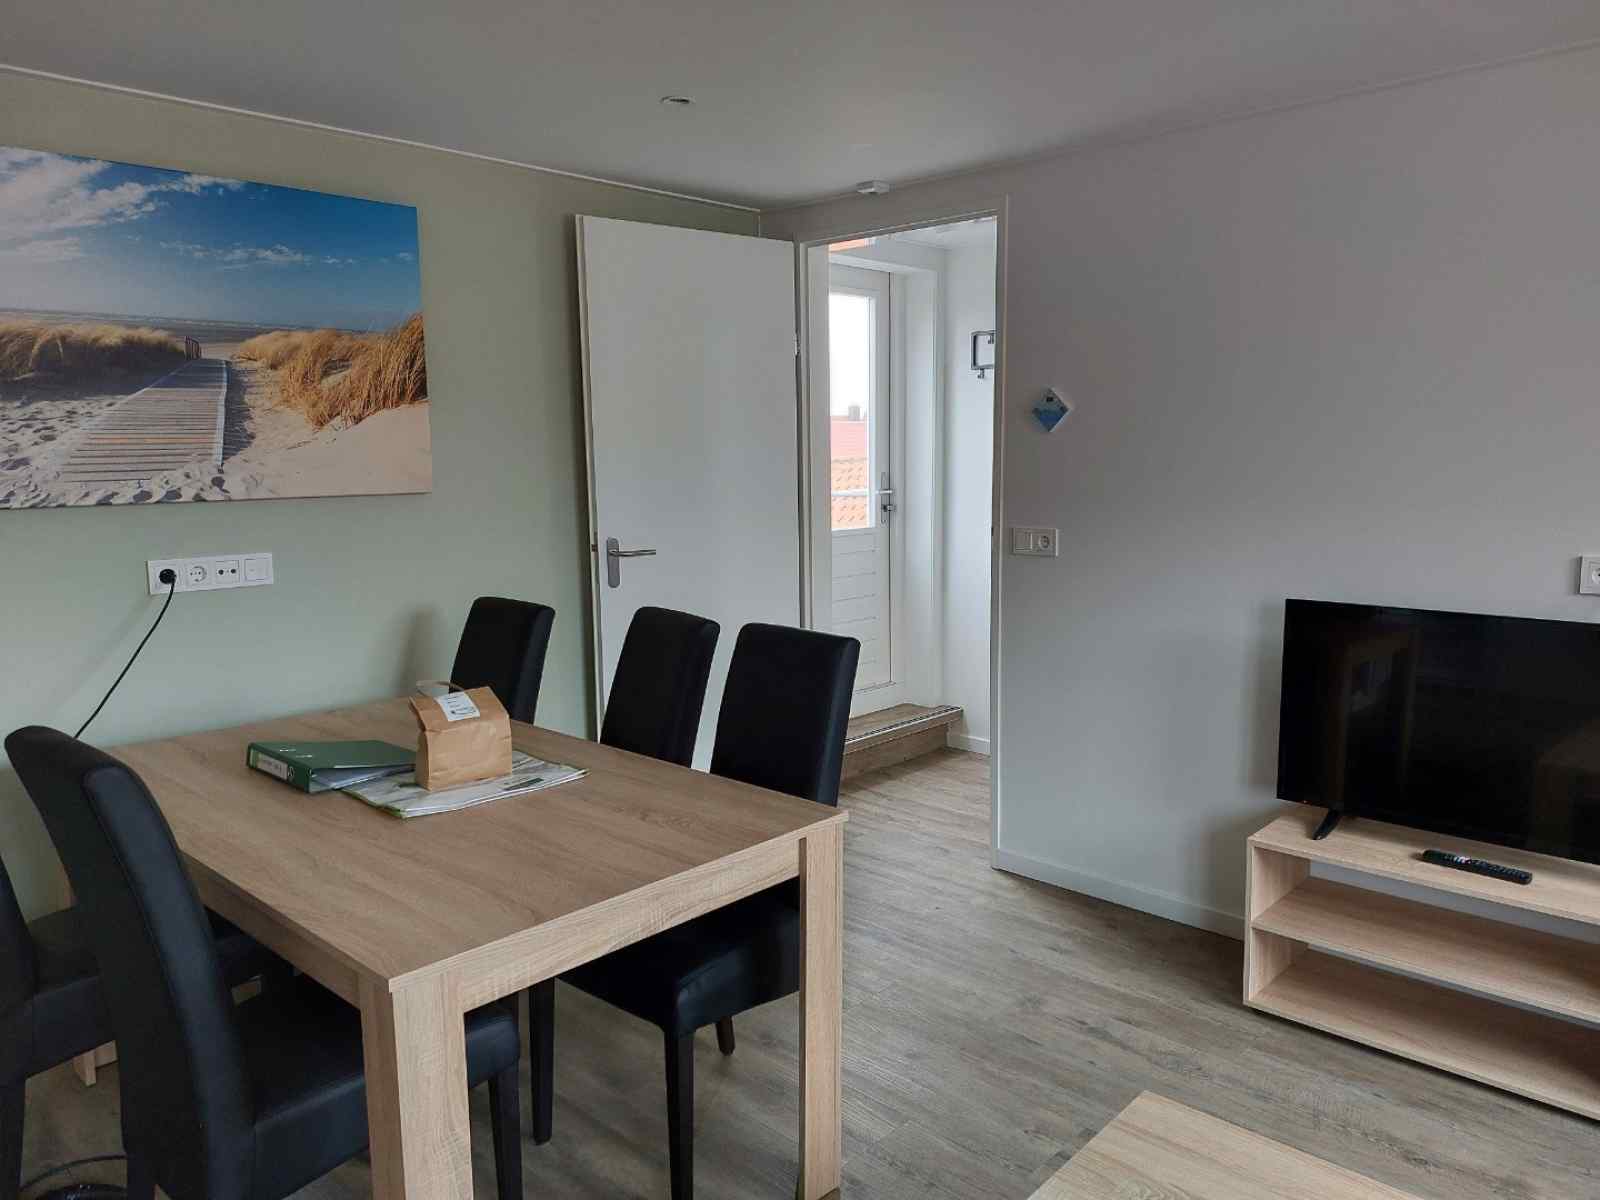 Sfeervol 5-persoons vakantie-appartement met dakterras in het centrum van Westkapelle - Nederland - Europa - Westkapelle